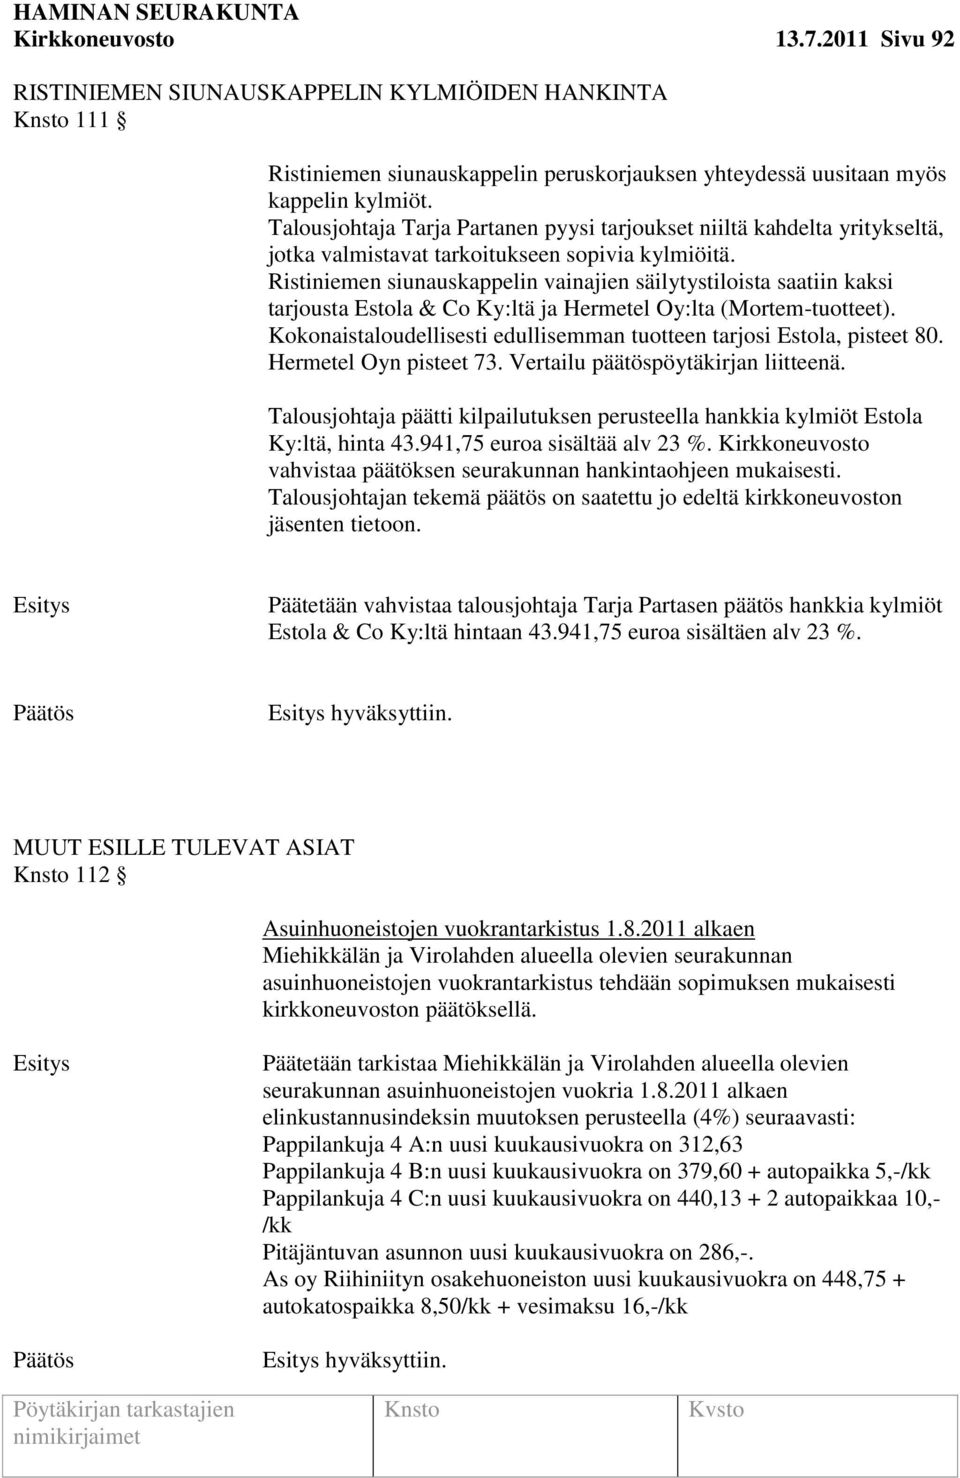 Ristiniemen siunauskappelin vainajien säilytystiloista saatiin kaksi tarjousta Estola & Co Ky:ltä ja Hermetel Oy:lta (Mortem-tuotteet).